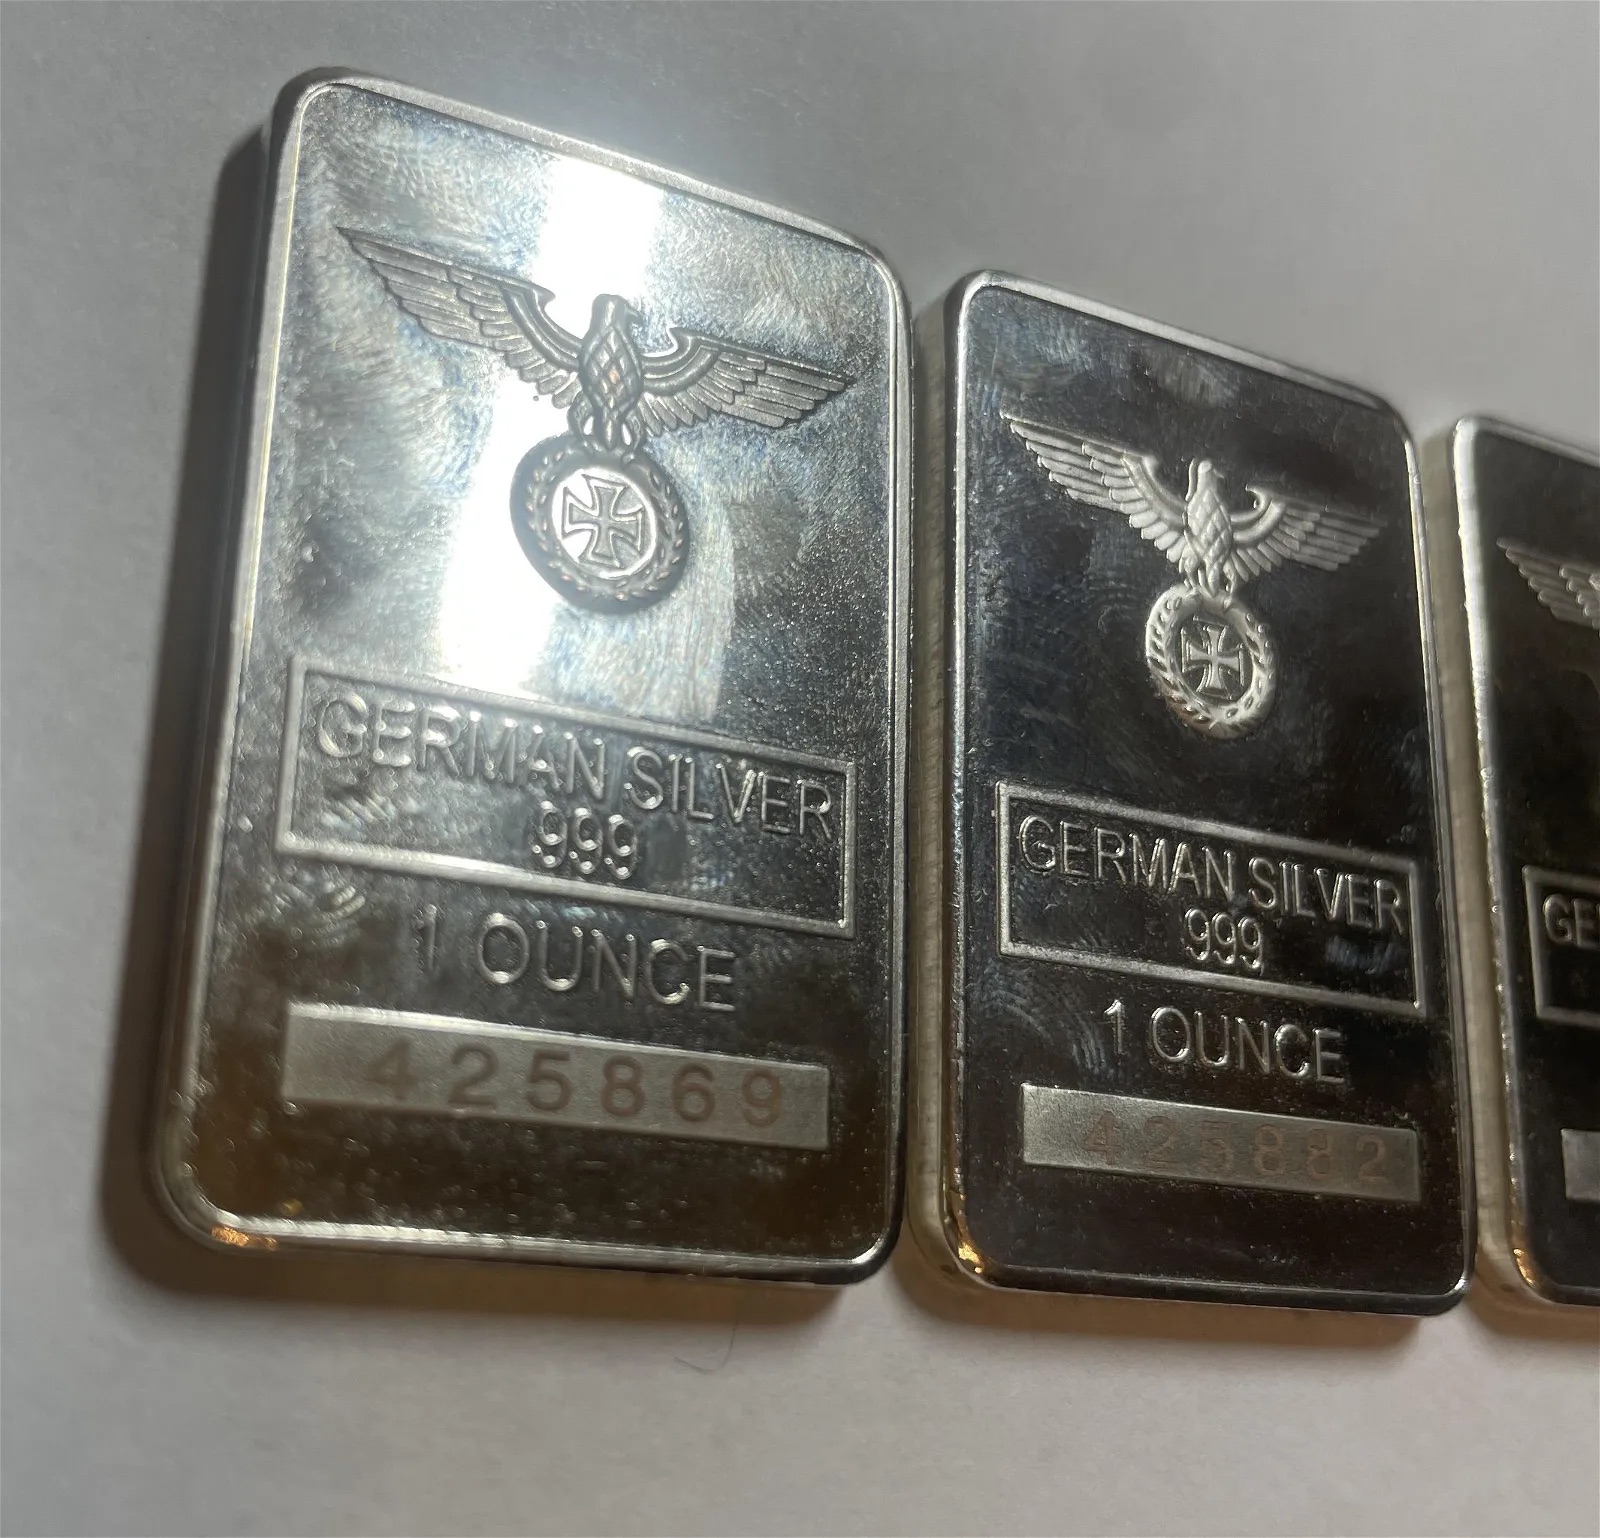 Deutsche Reichsbank Silver Bars (3) - Image 2 of 4